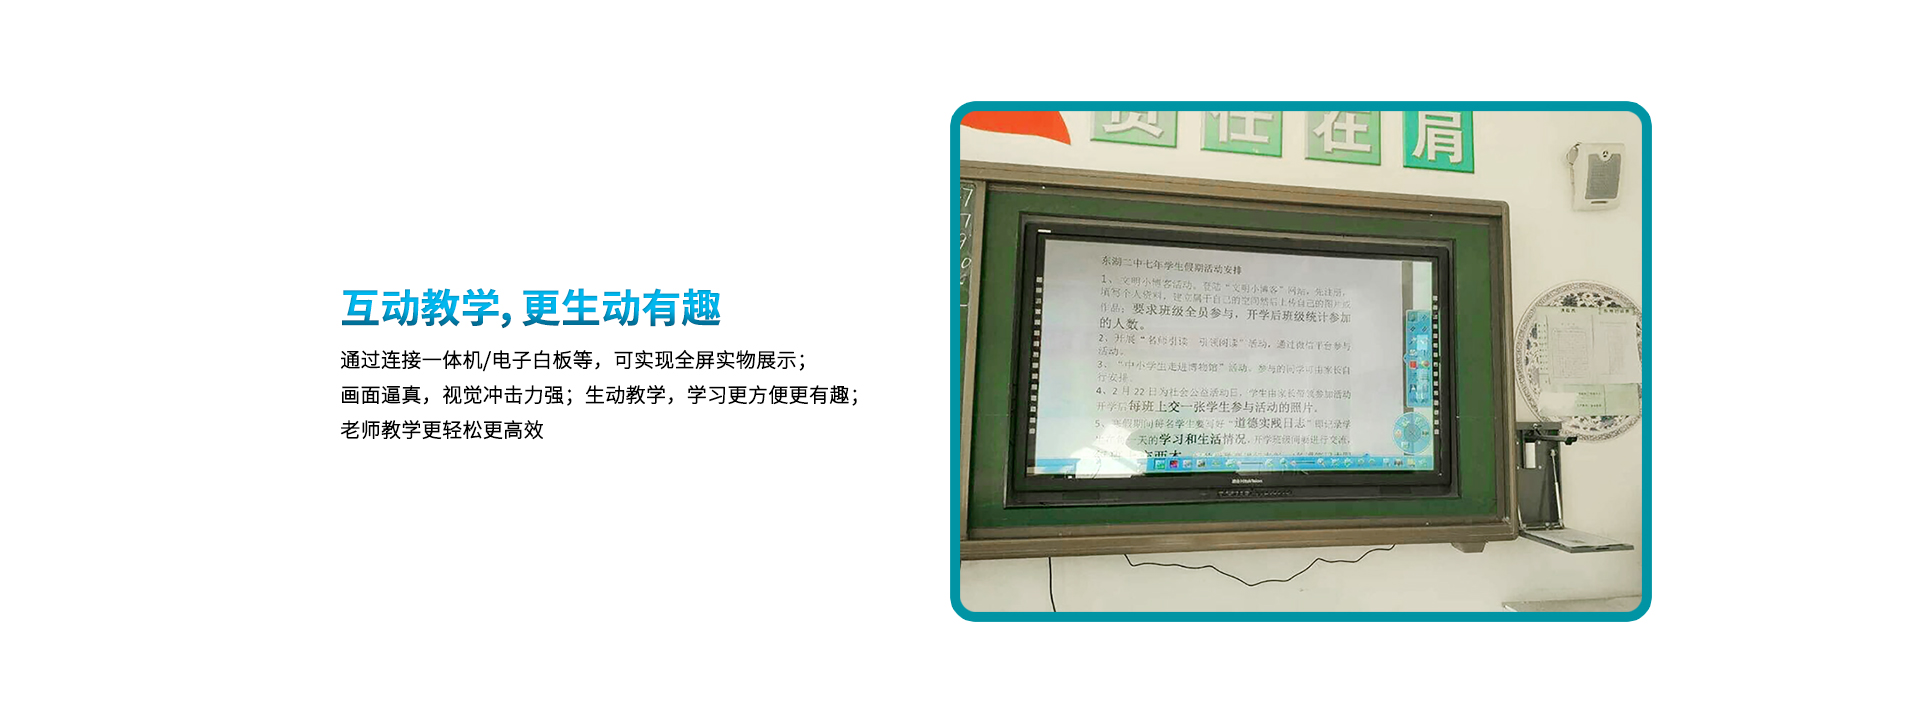 良田小壁挂高拍仪PB1000AF互动教学展示